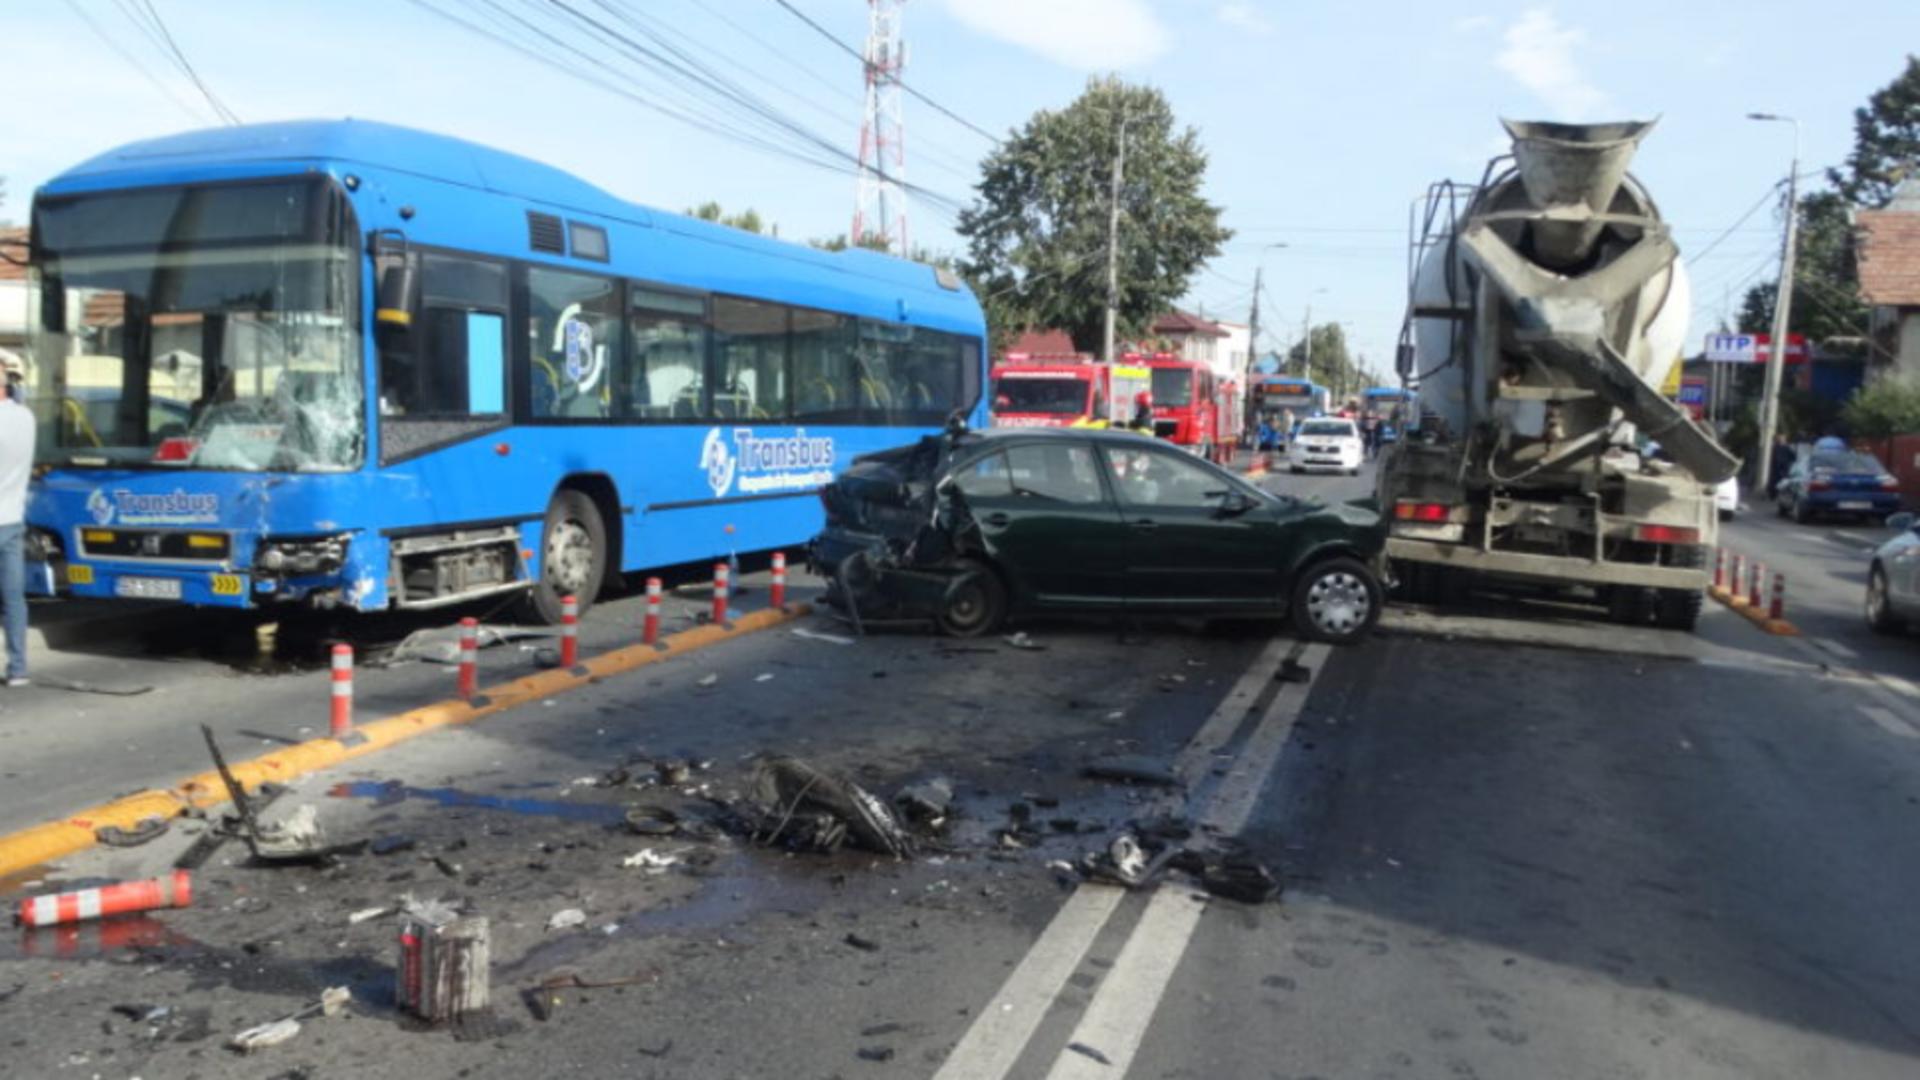 Carambol în Buzău, într-o zonă foarte circulată: ciocnire între 4 mașini și un autobuz - 2 persoane, cu politraumatisme, la spital - FOTO